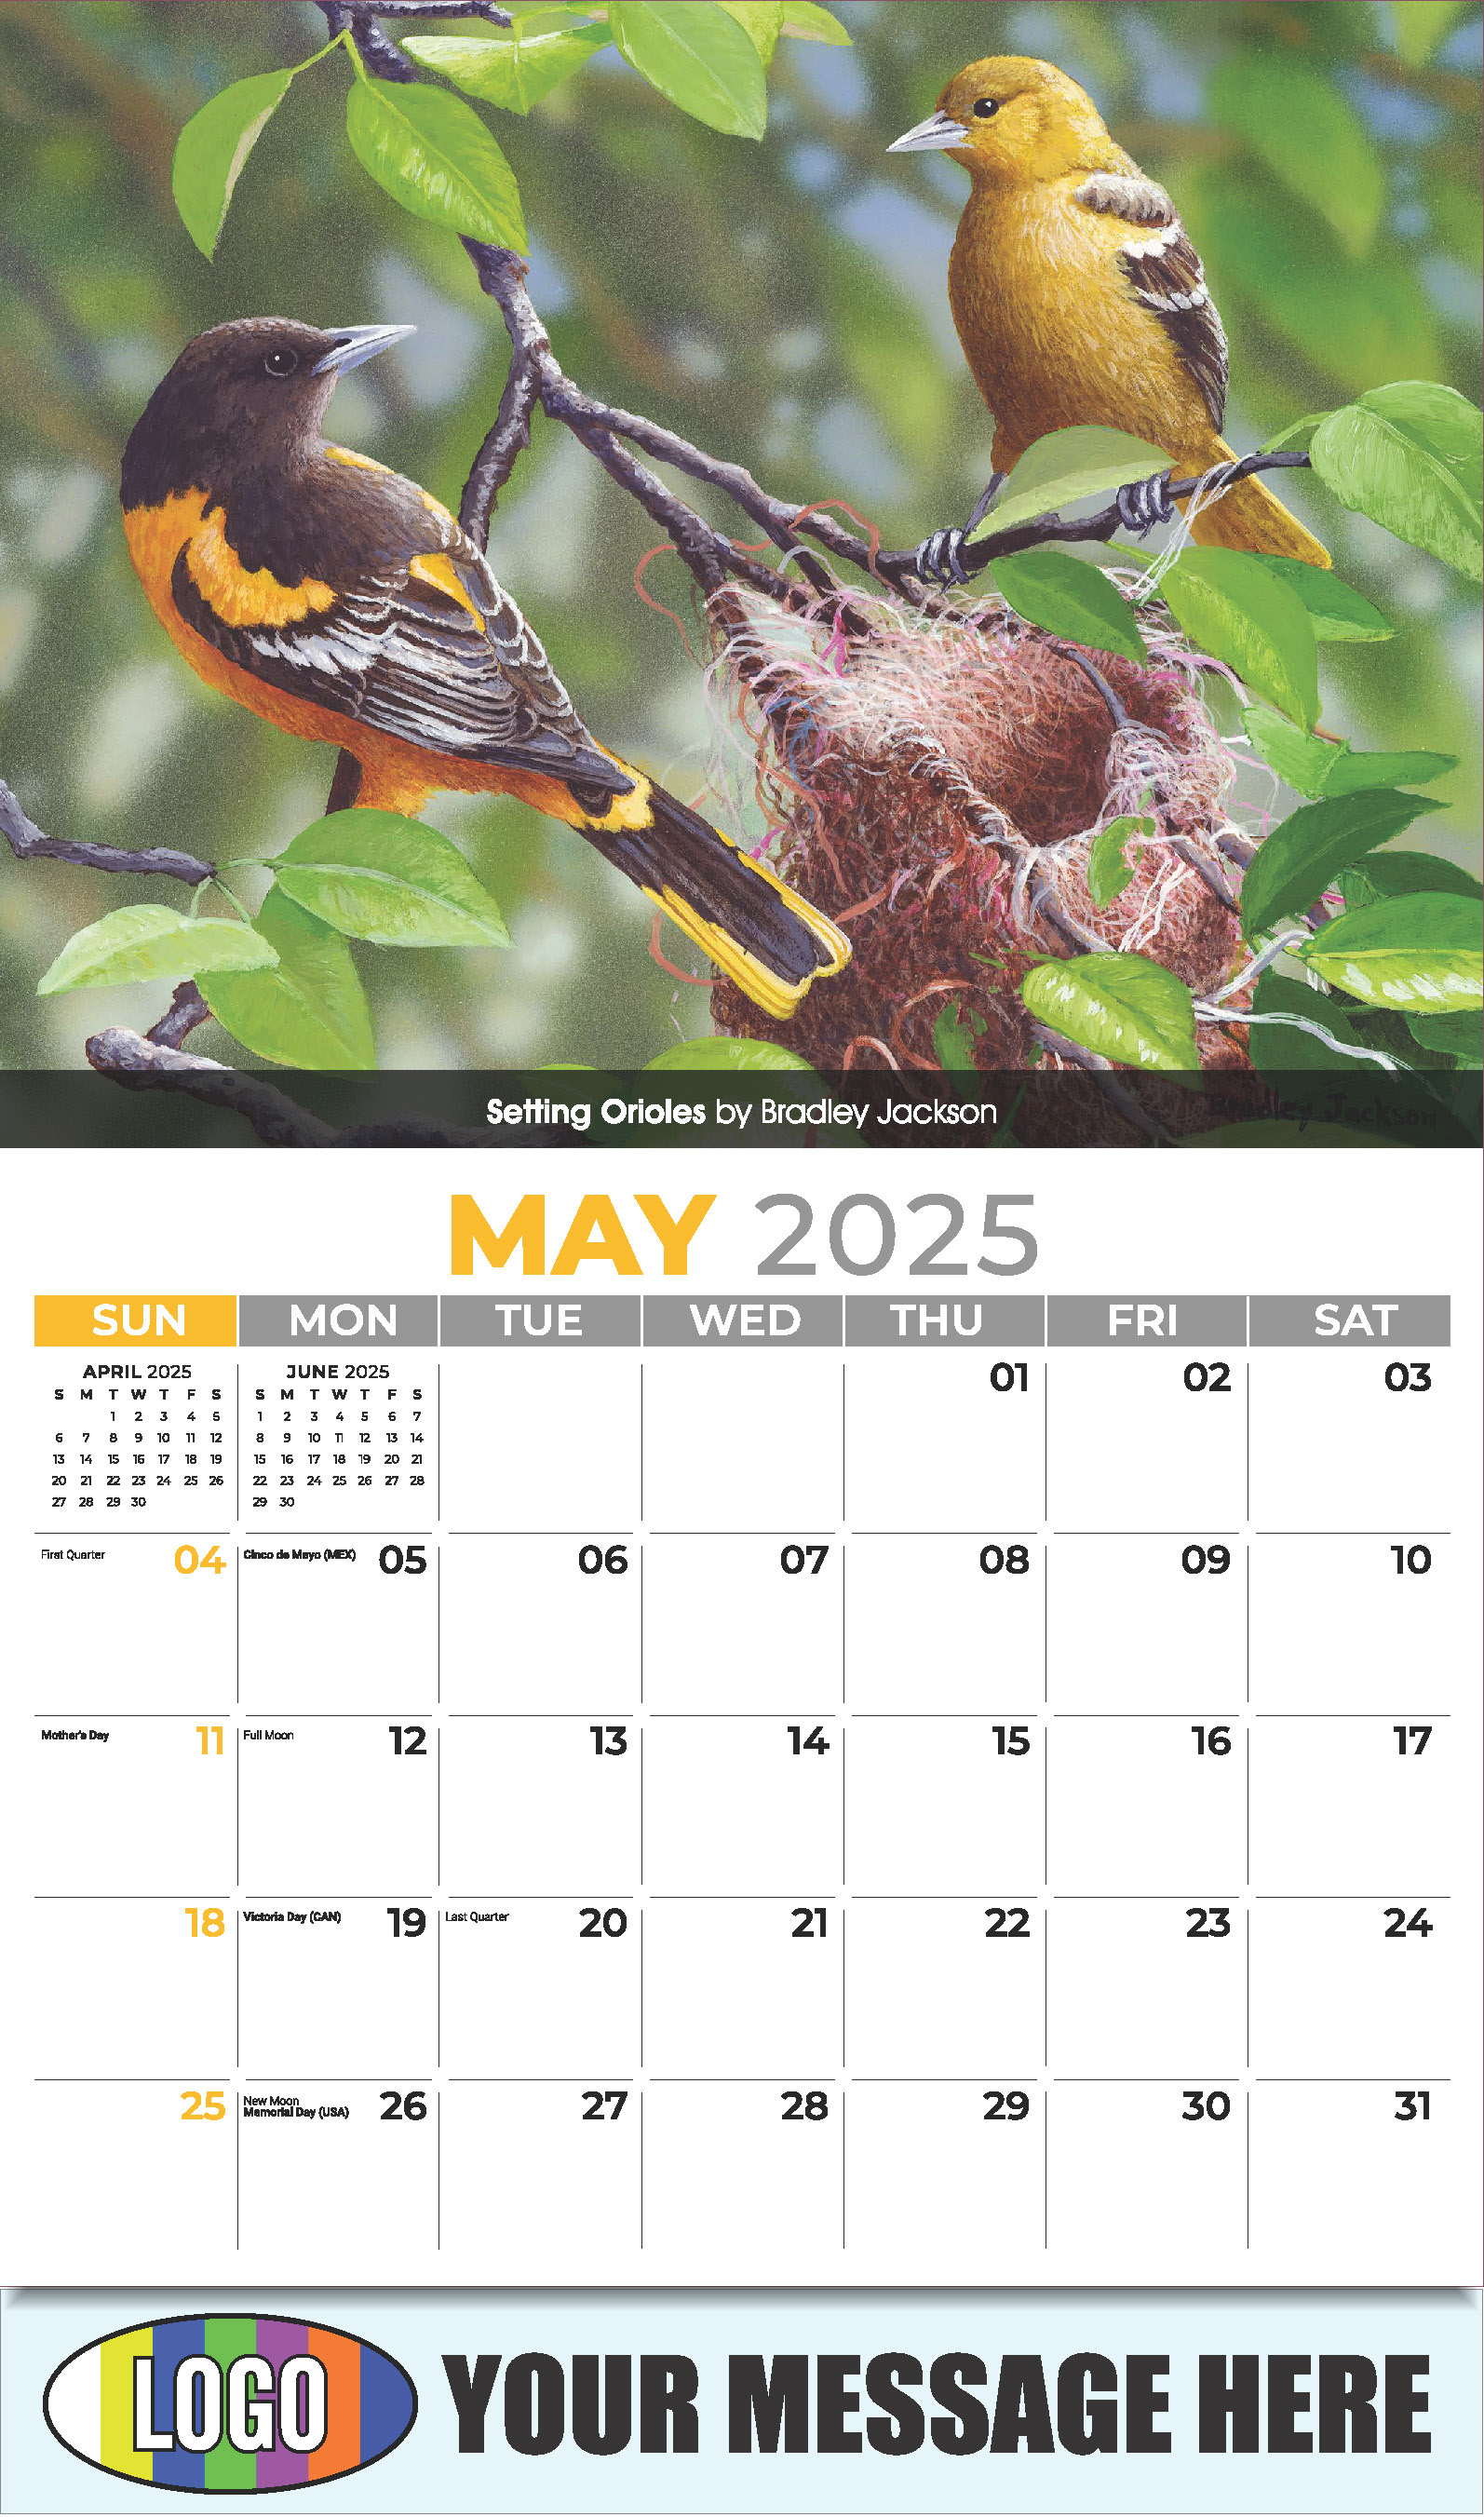 Garden Birds 2025 Business Promotional Calendar - May